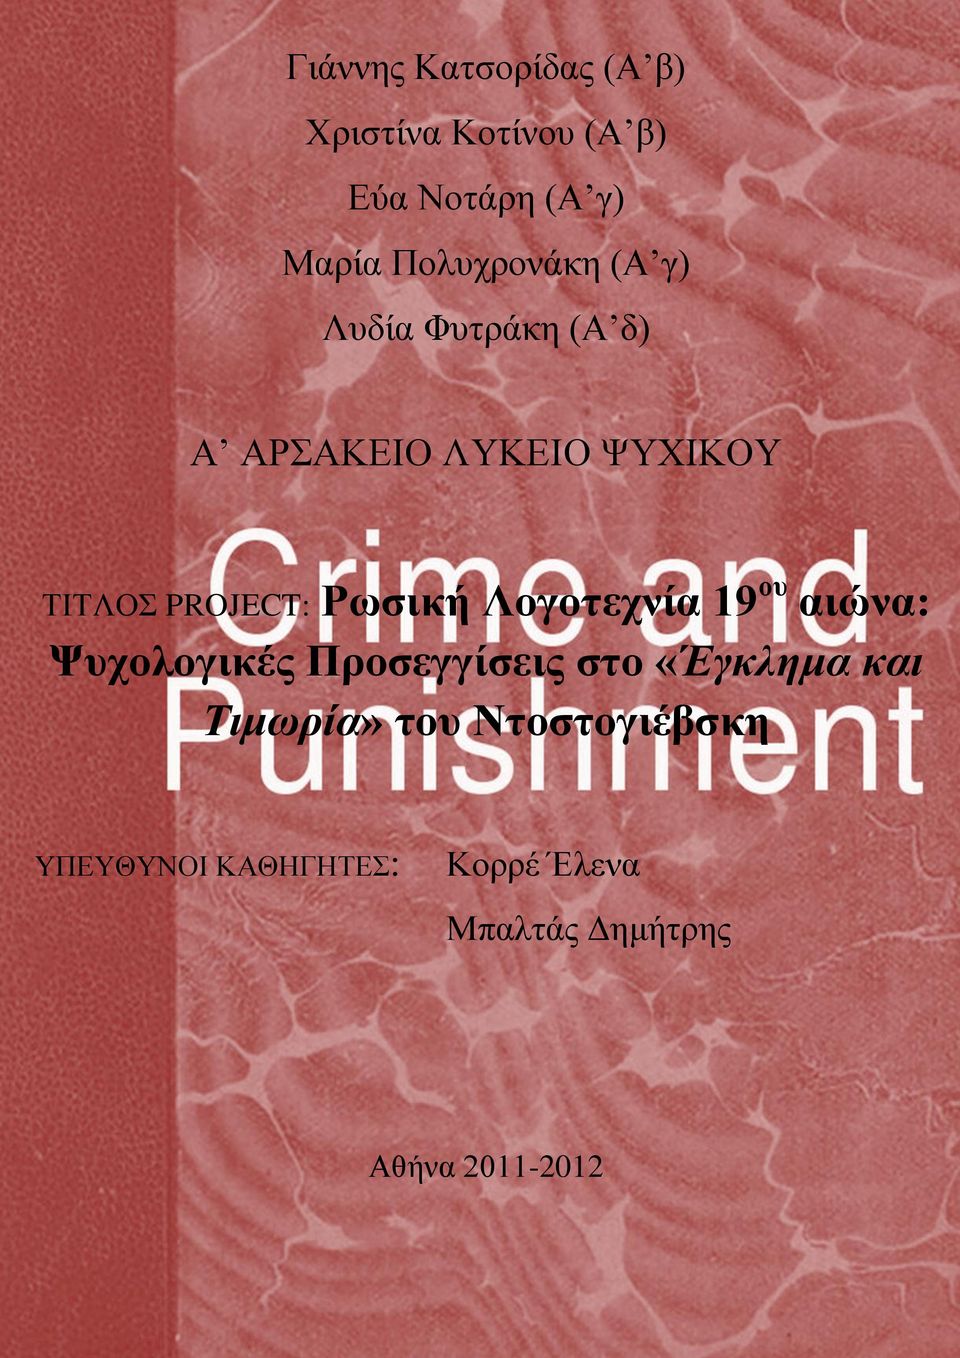 Ρωσική Λογοτεχνία 19 ου αιώνα: Ψυχολογικές Προσεγγίσεις στο «Έγκλημα και